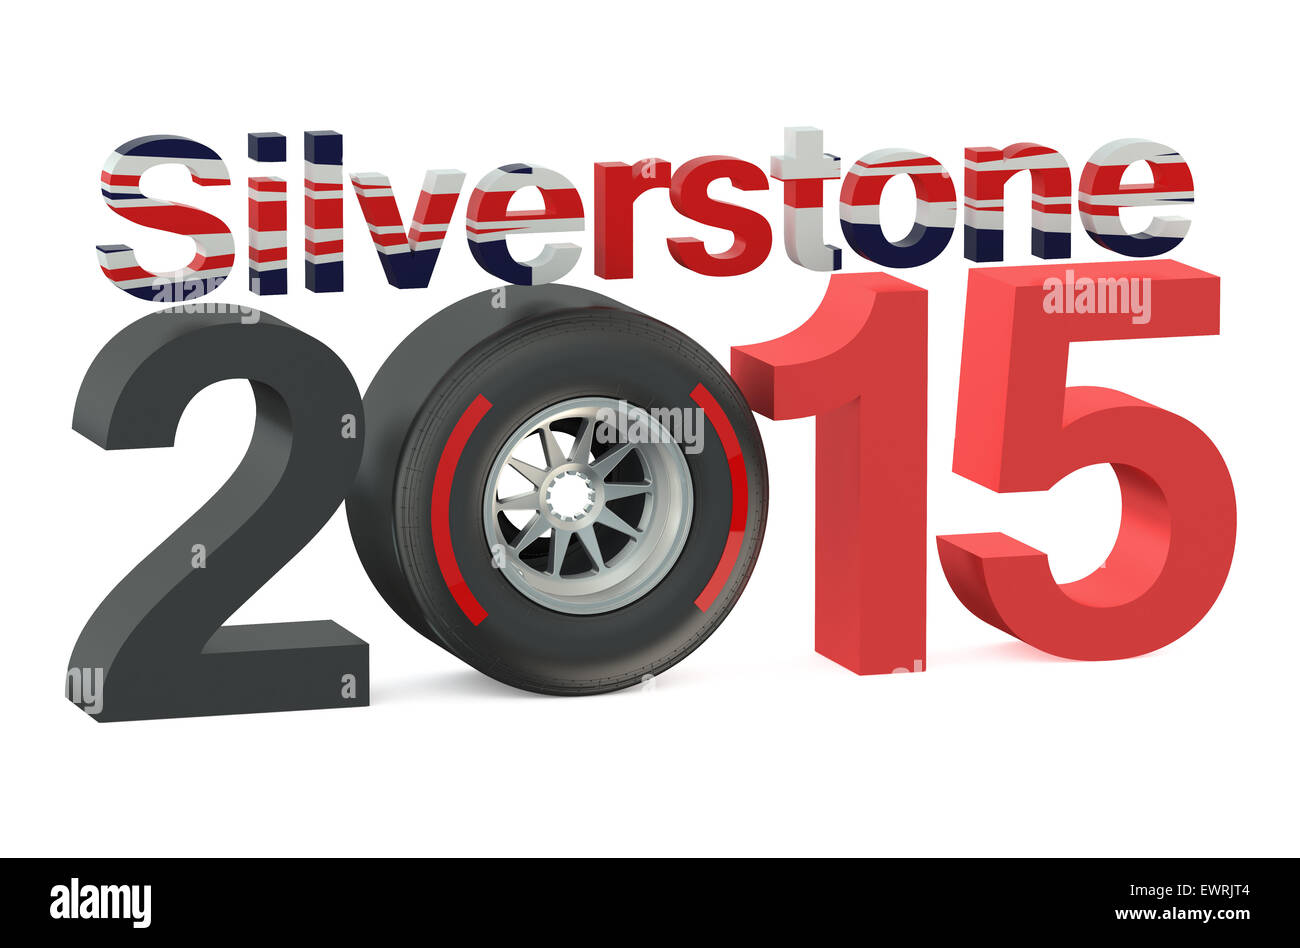 F1 Formula 1 Silverstone 2015 concept Stock Photo